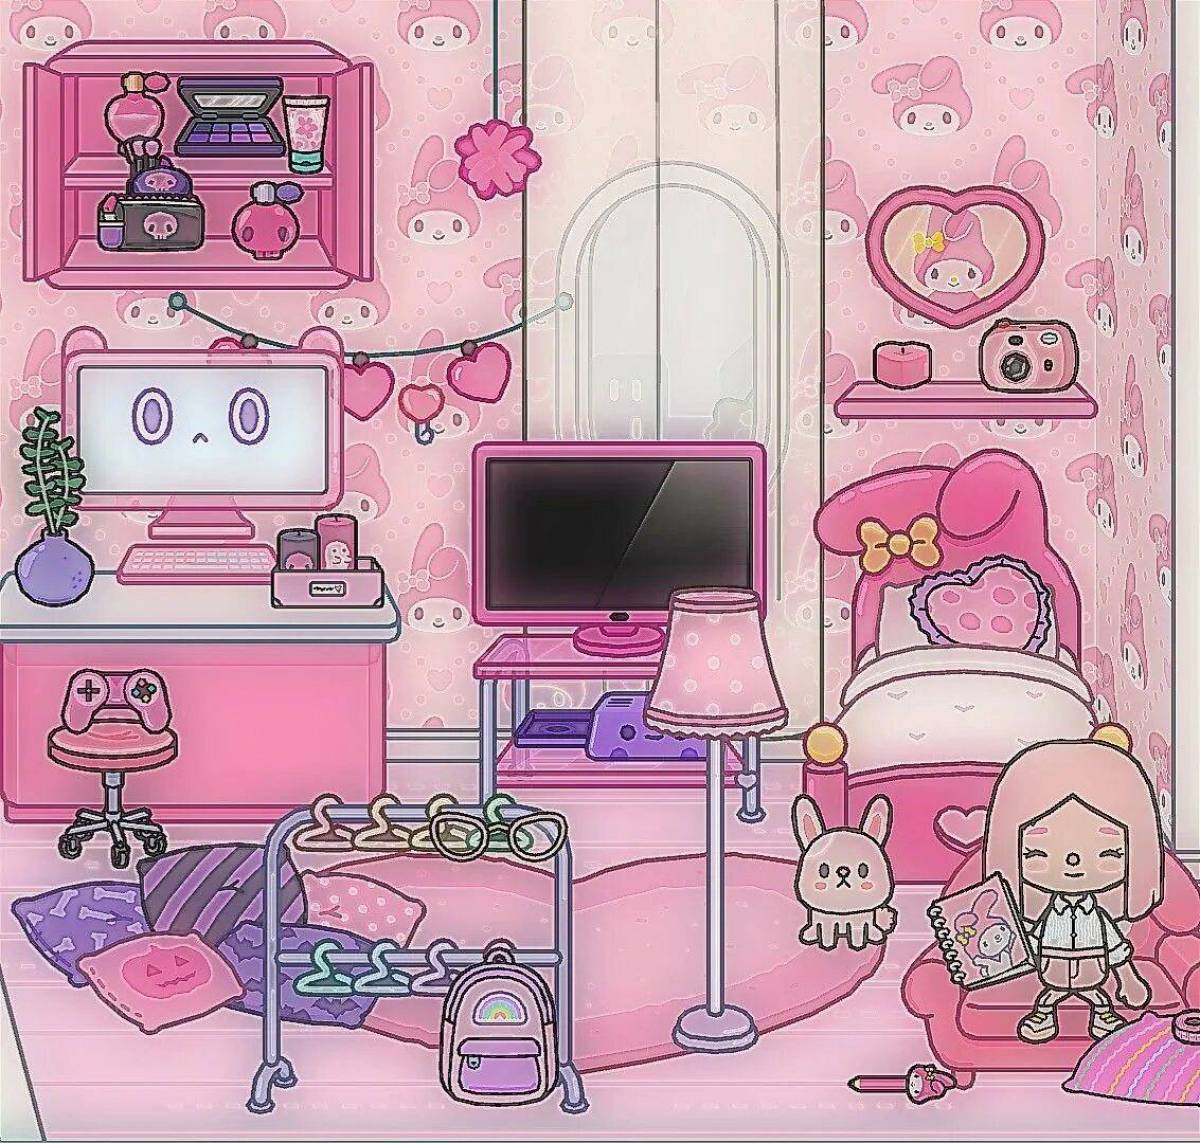 Как сделать красивую комнату в боку боку. Тока бока комната для девочки. Тока бока розовая комната. Комната в розовом цвете мультяшная.